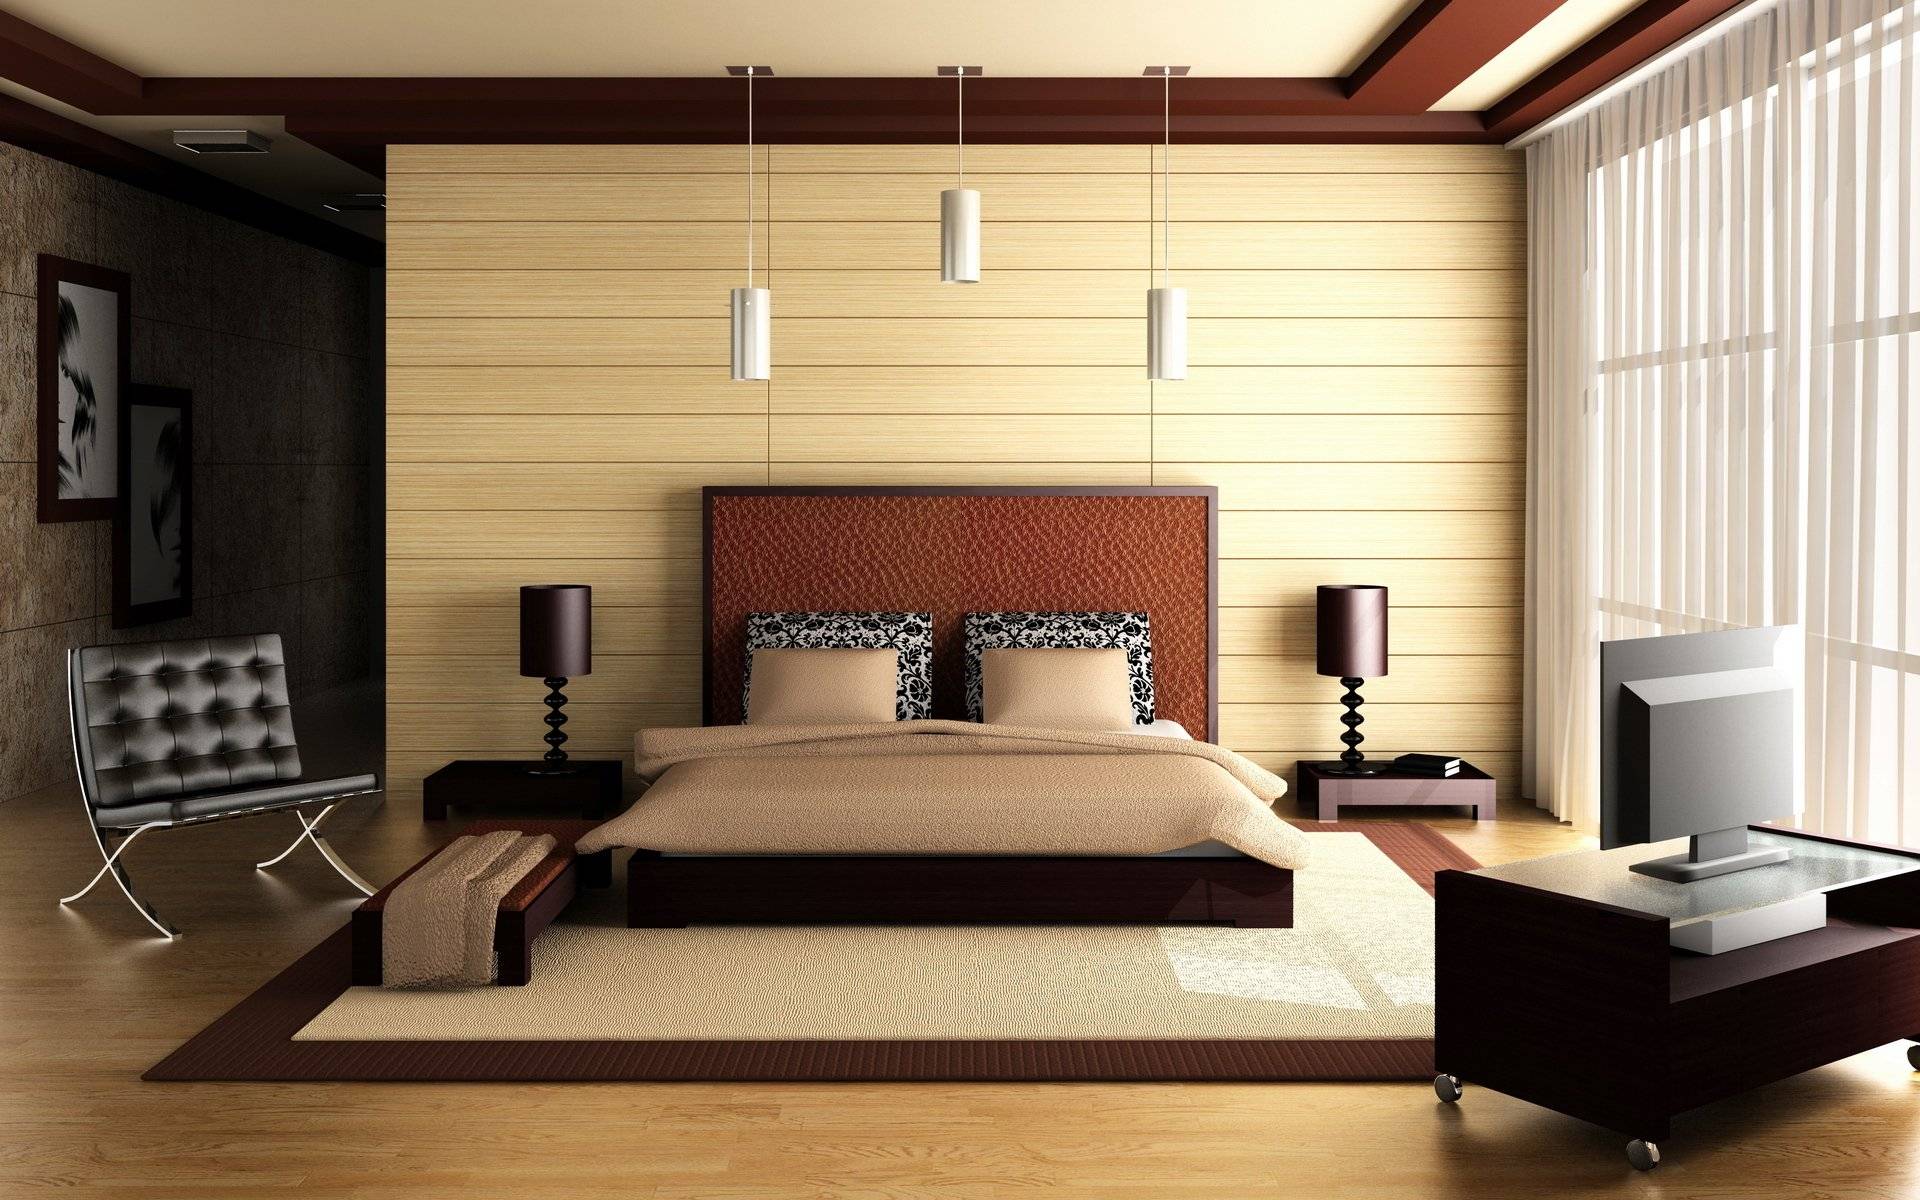 Как правильно поставить кровать в спальне: размещение по фен-шуй, где нельзя расположить постель